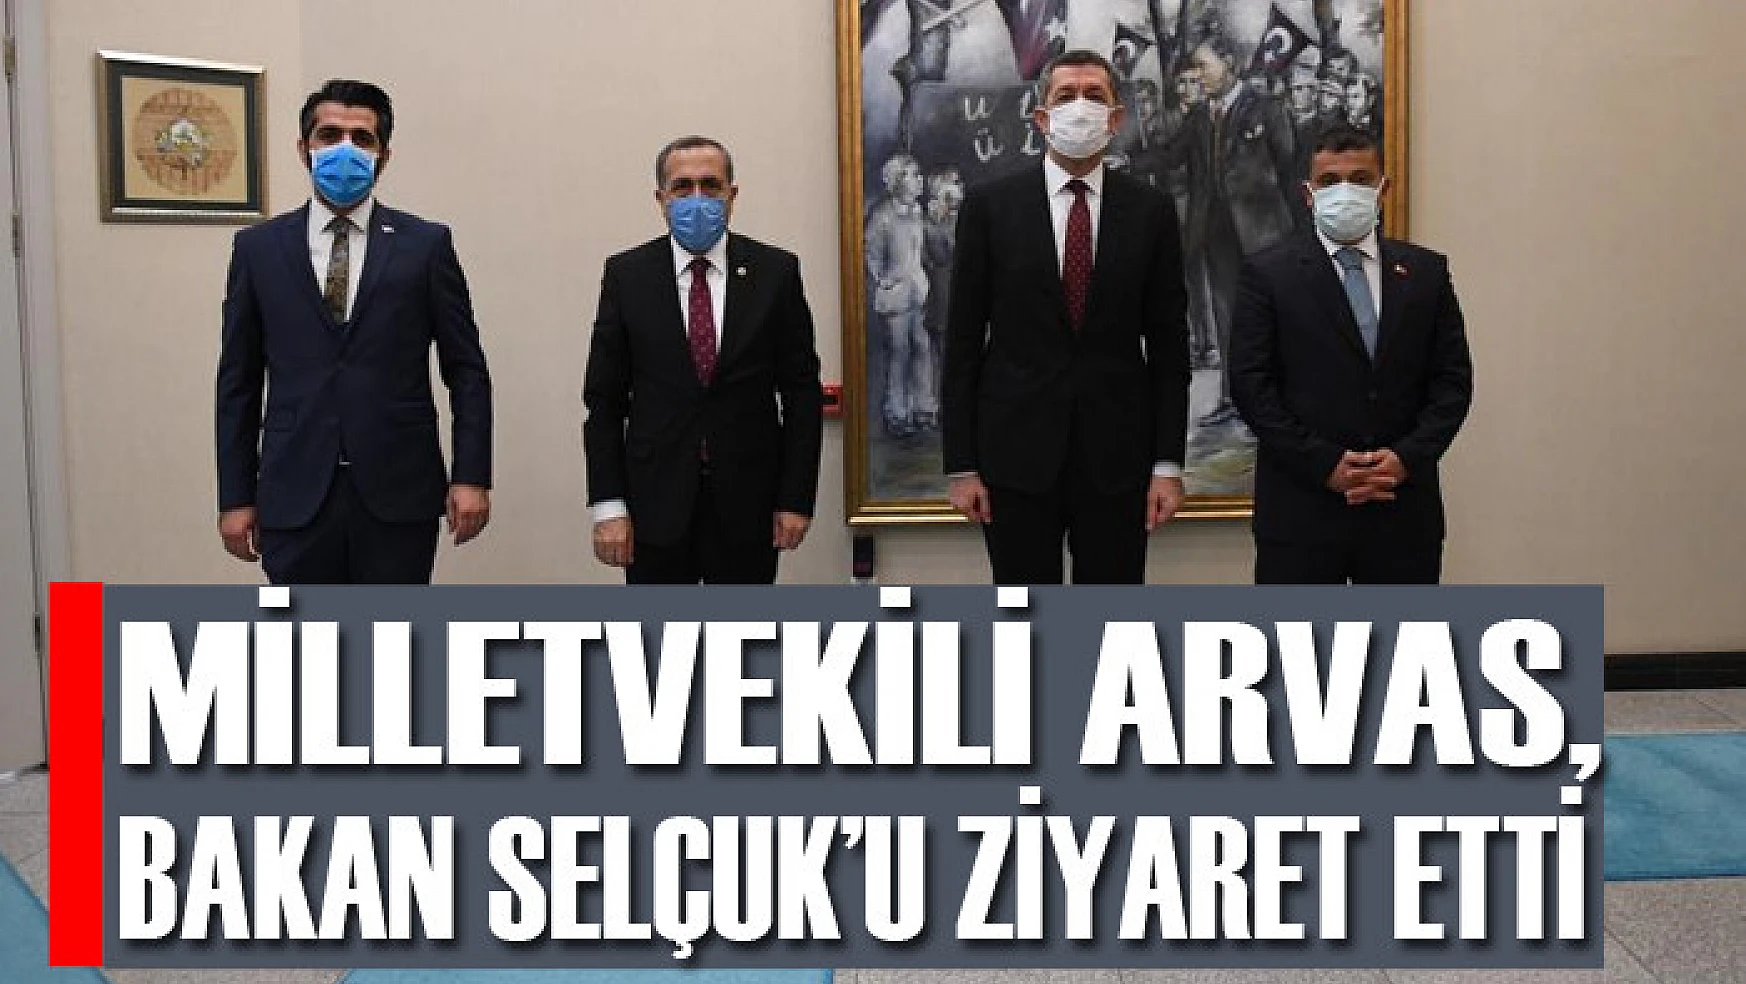 Milletvekili Arvas, Bakan Selçuk'u ziyaret etti